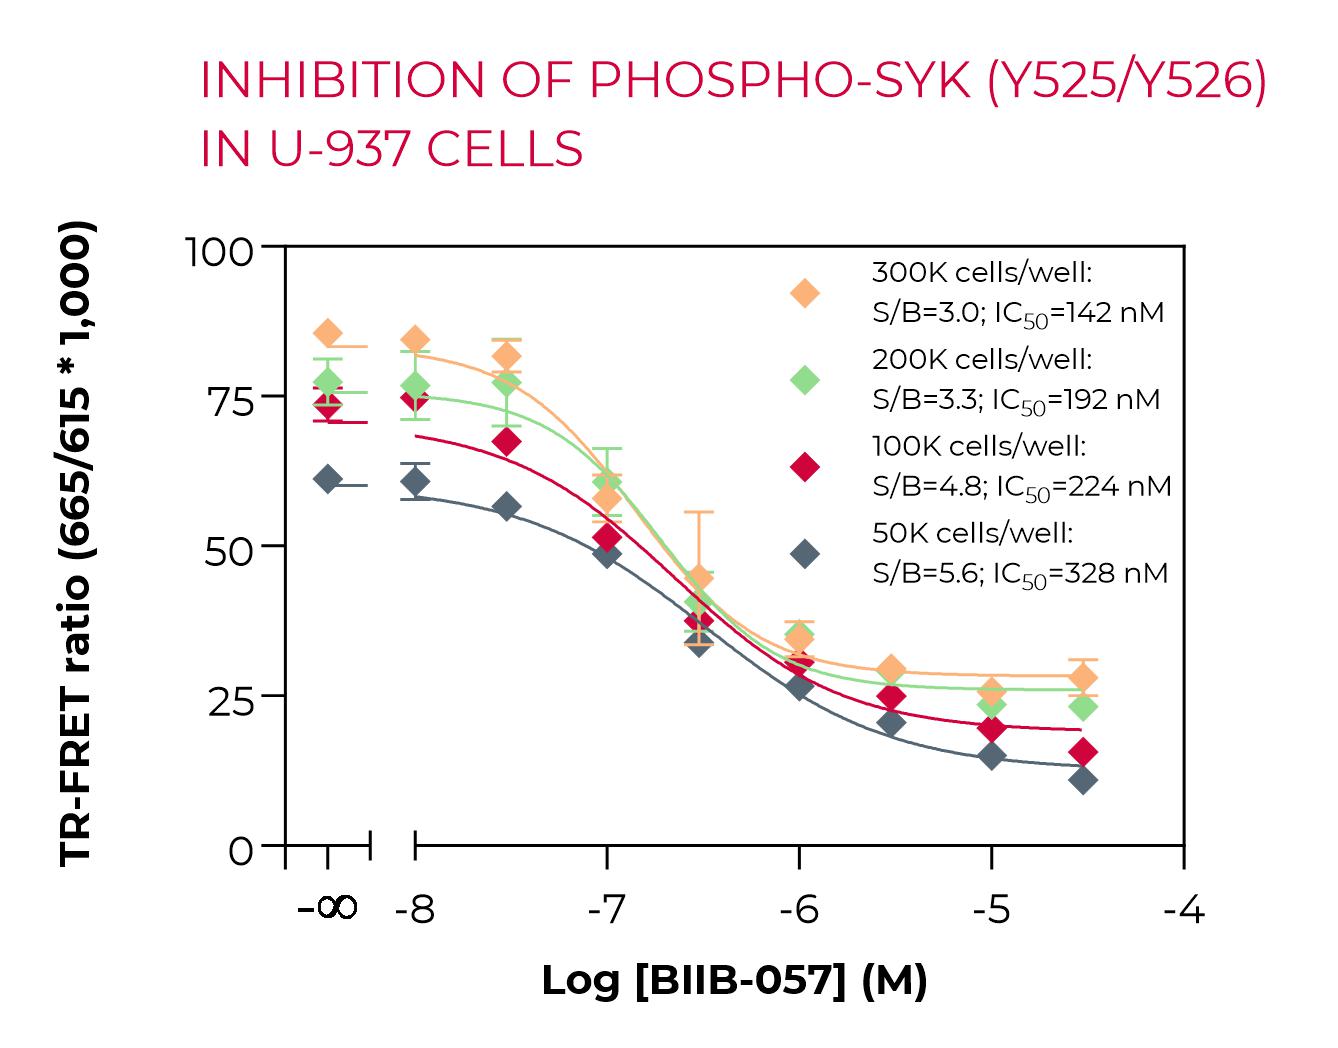 Inhibition of Phospho-SYK (Y525/Y526) in U-937 cells